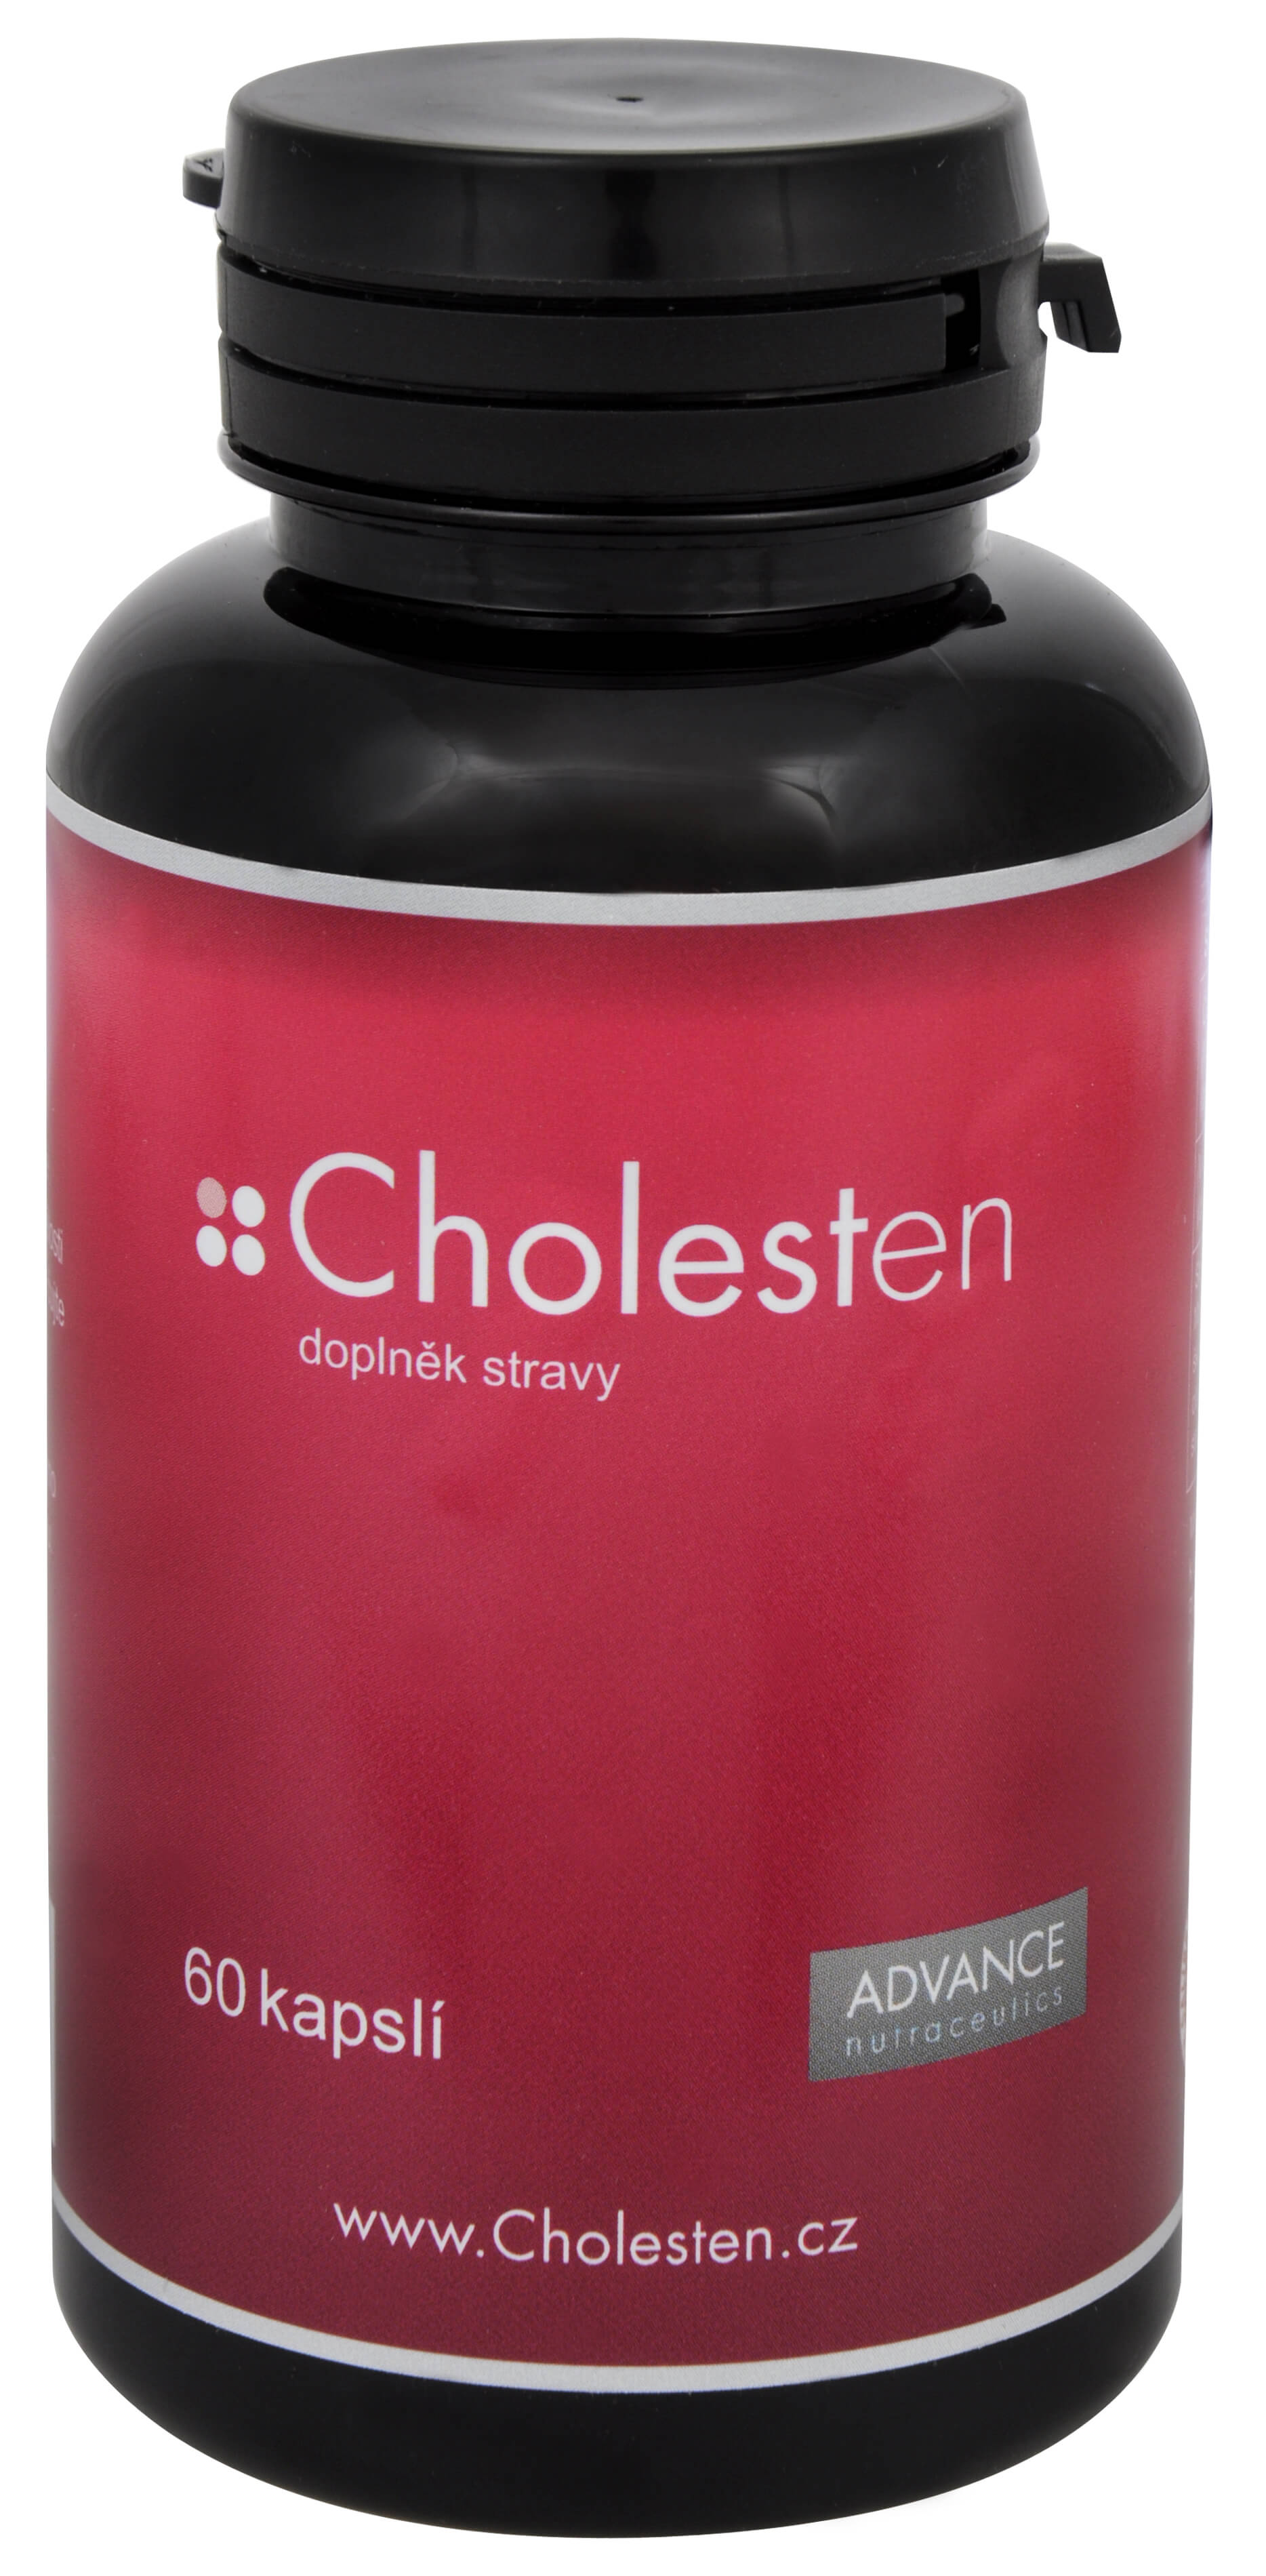 Zobrazit detail výrobku Advance nutraceutics Cholesten 60 kapslí + 2 měsíce na vrácení zboží